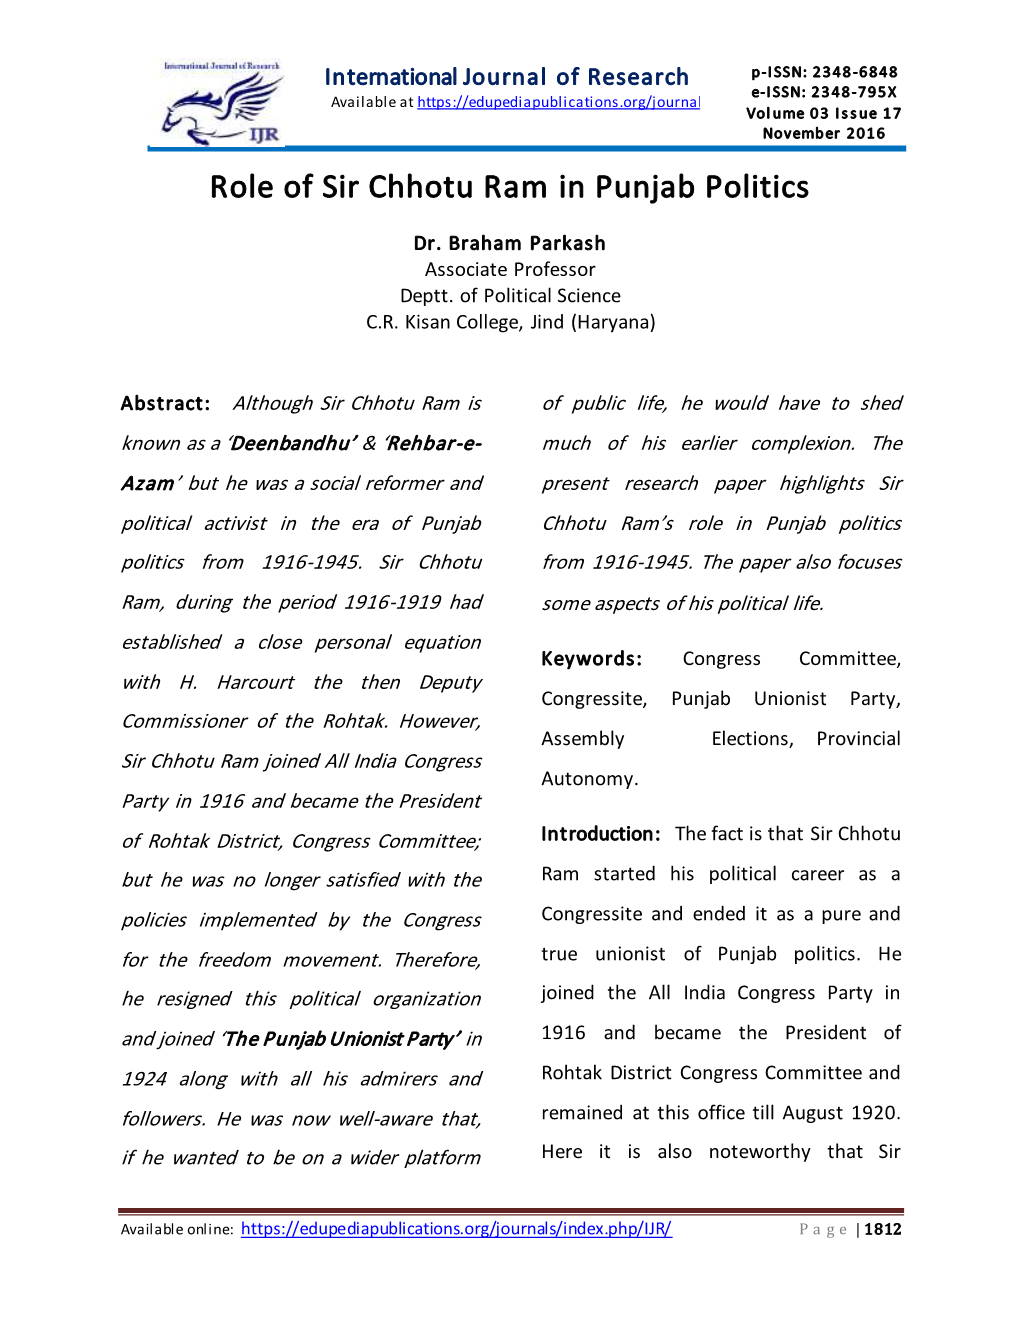 Role of Sir Chhotu Ram in Punjab Politics